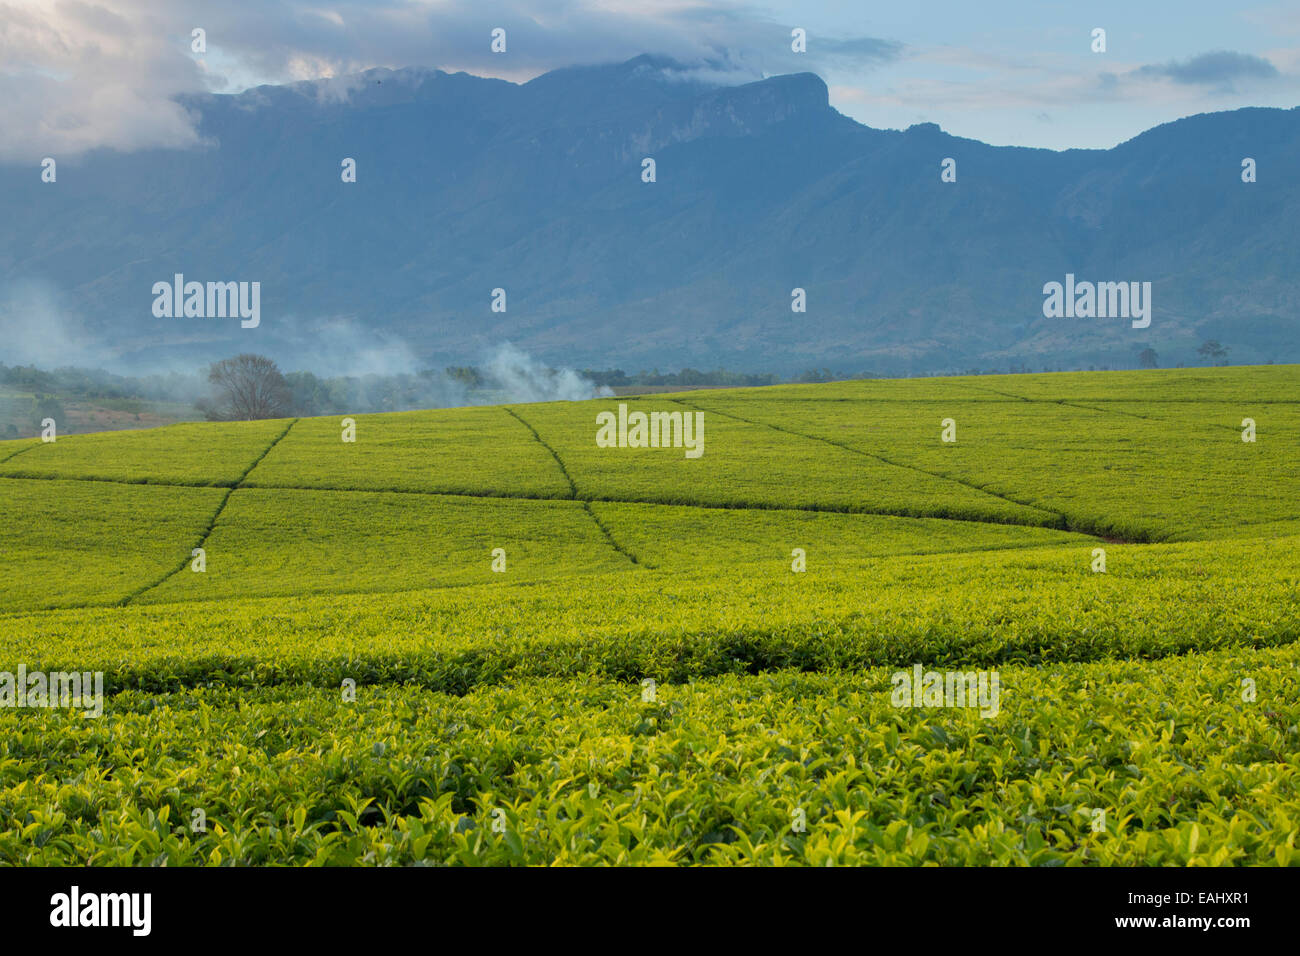 Les plantations de thé au mont Mulanje, dans le sud du Malawi. Banque D'Images